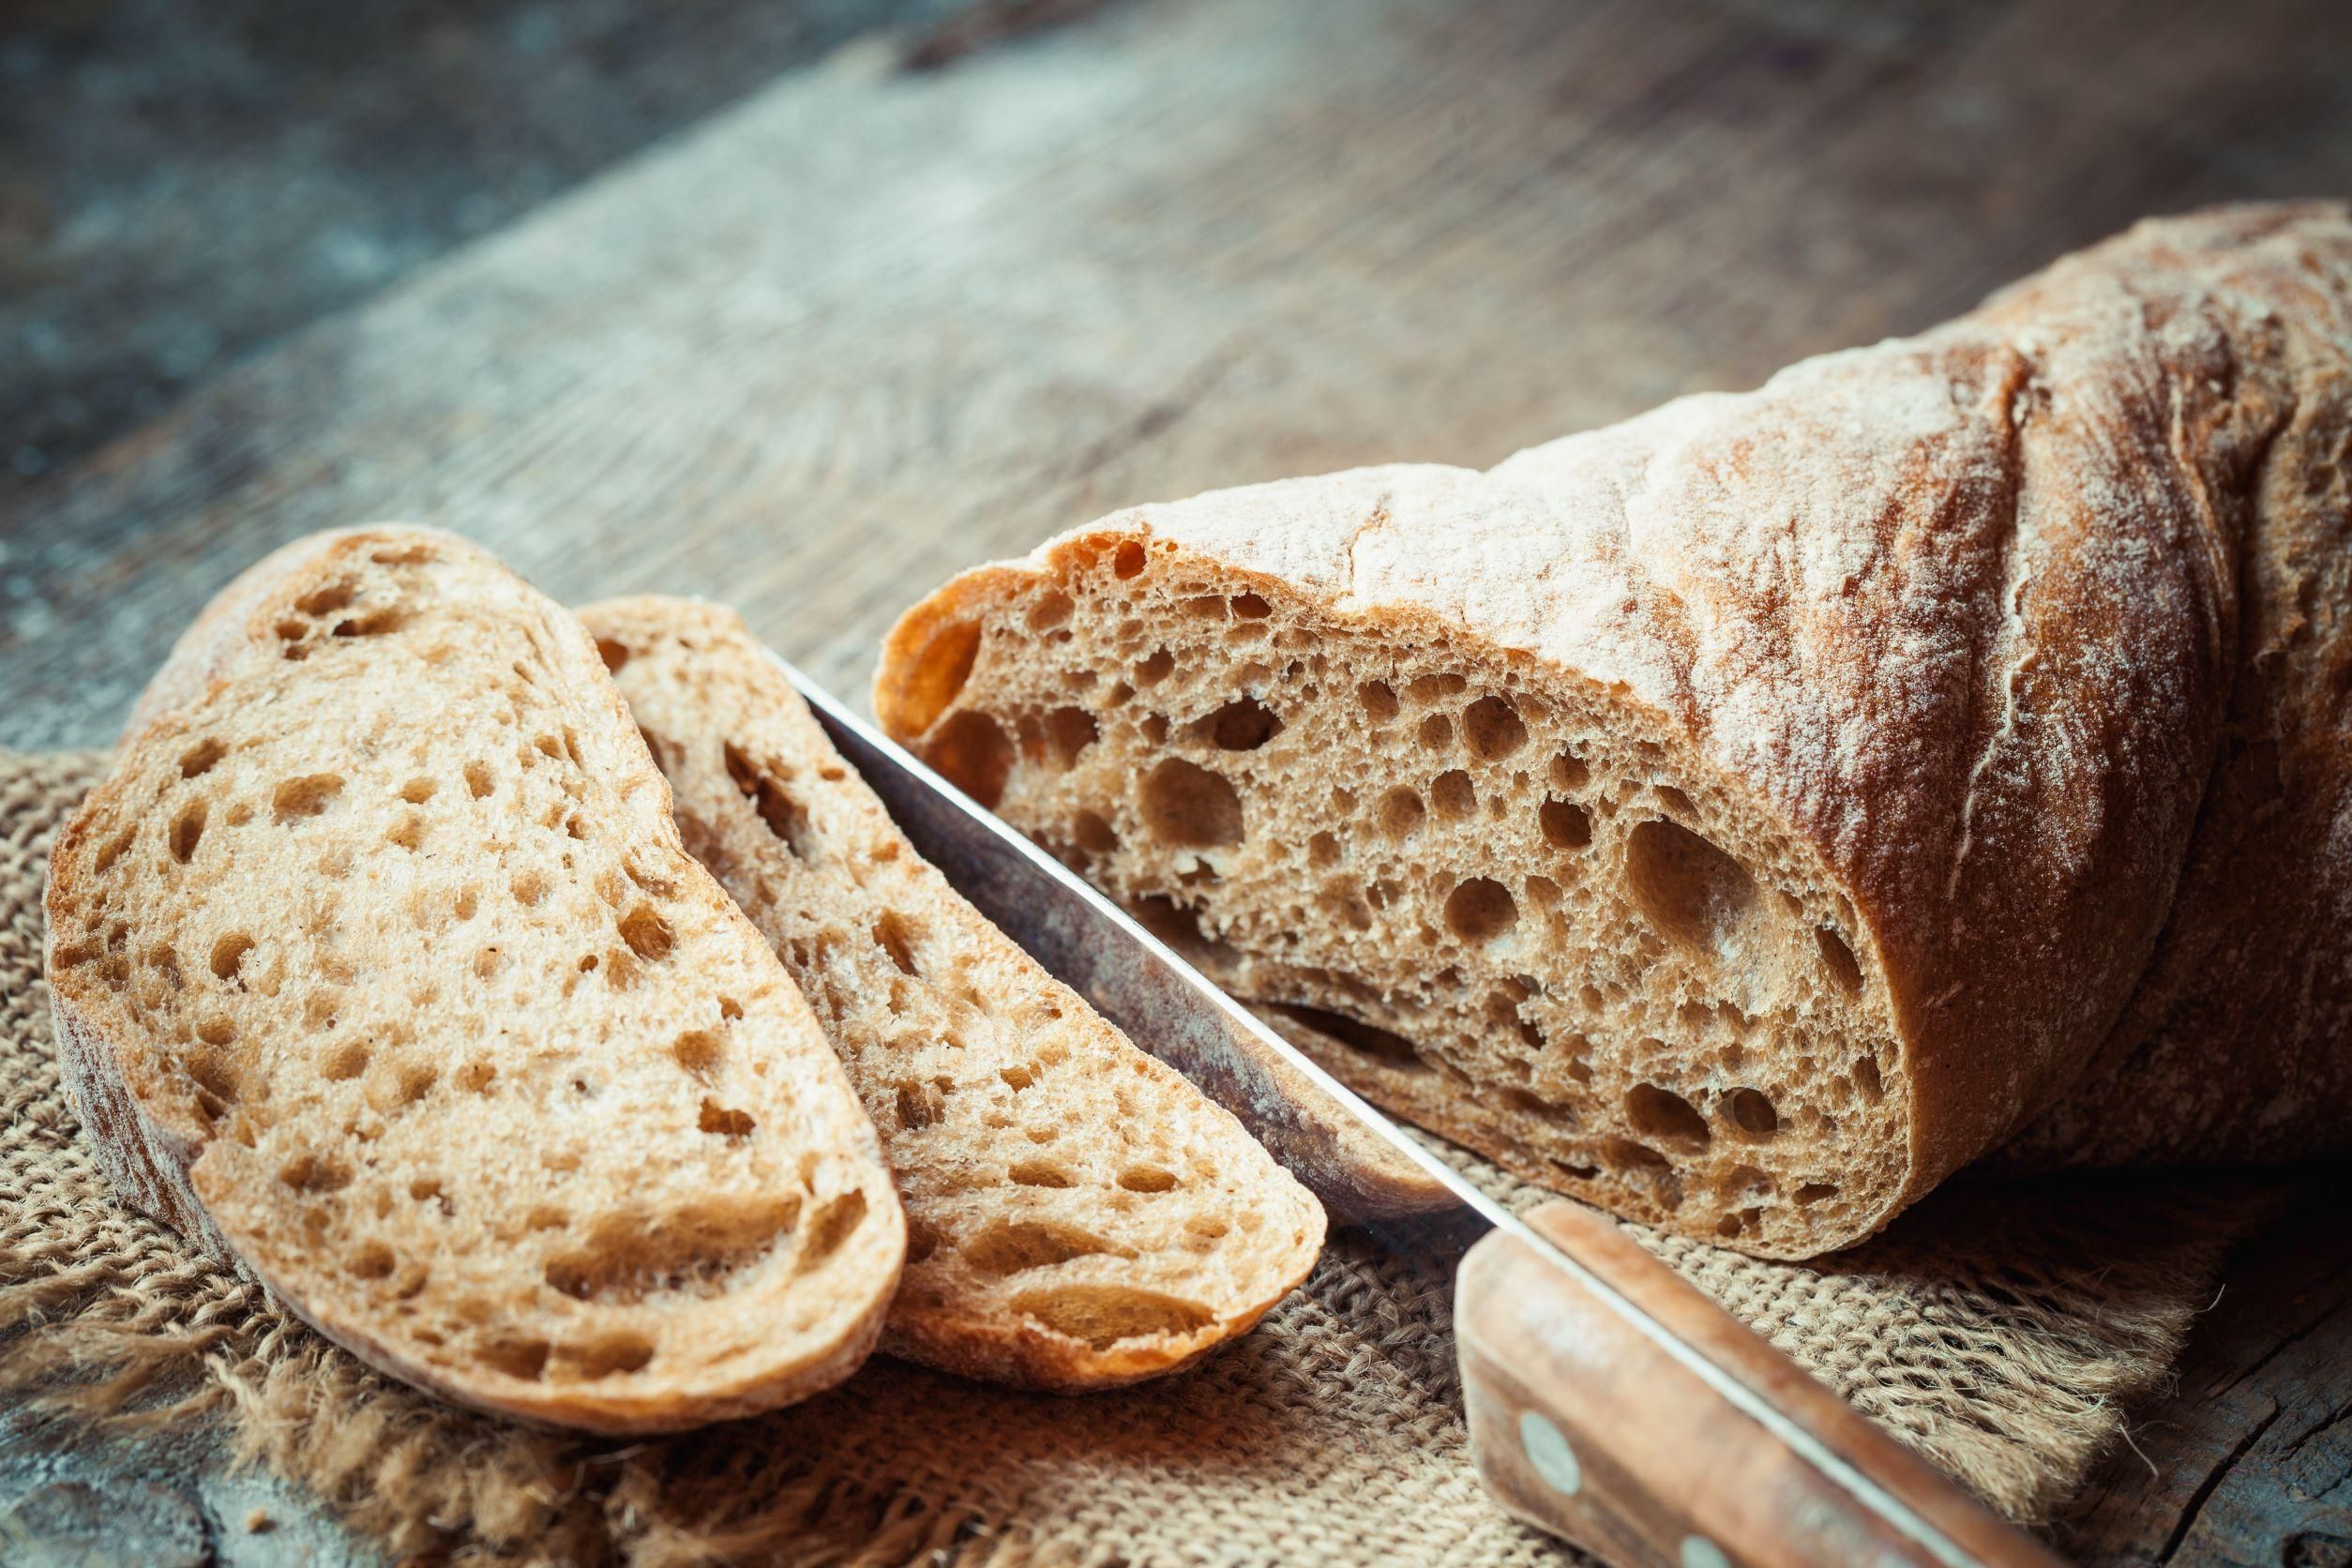 Októbertől ismét drágábban kapják a lisztet a pékségek, ezért drágulhat a kenyér is